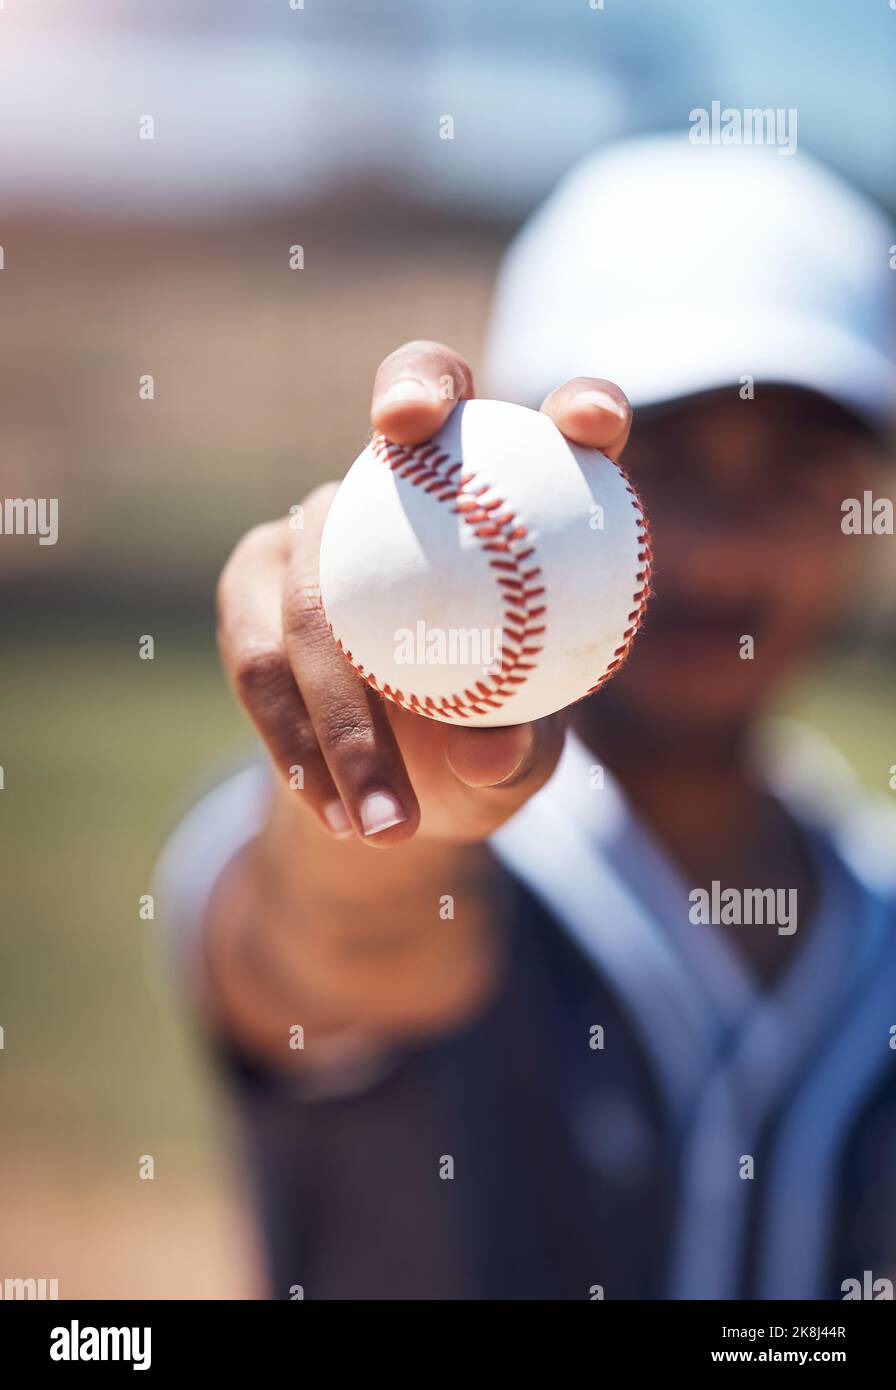 Baseball ou rien du tout. Un homme tenant une balle pendant un match de baseball. Banque D'Images